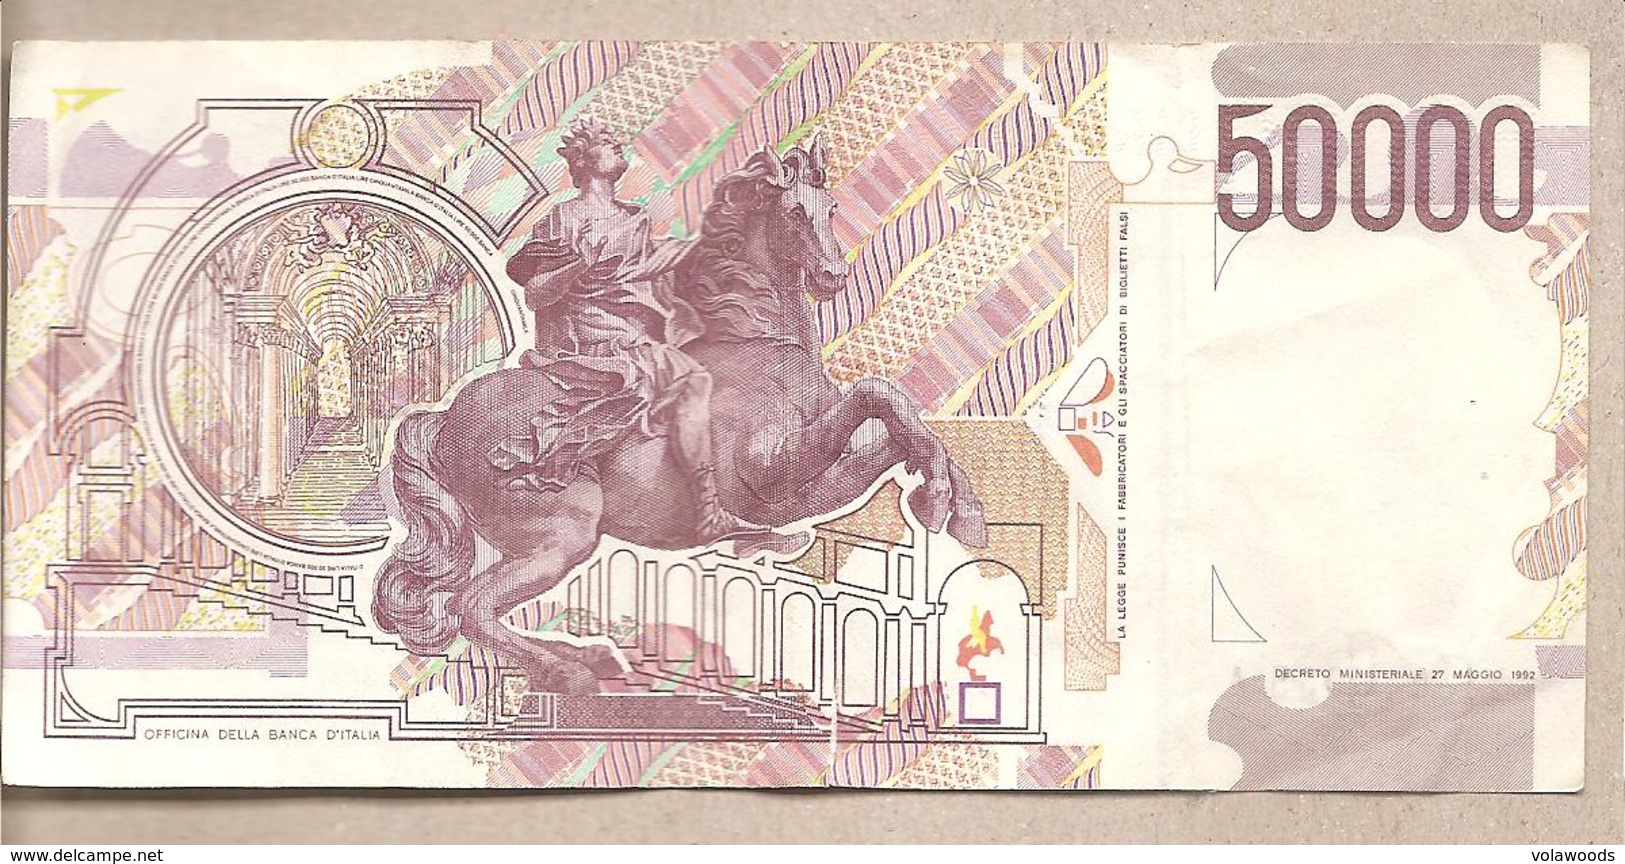 Italia - Banconota Circolata Da 50.000 Lire "Bernini II Tipo" P-116c - 1999 - 50000 Liras